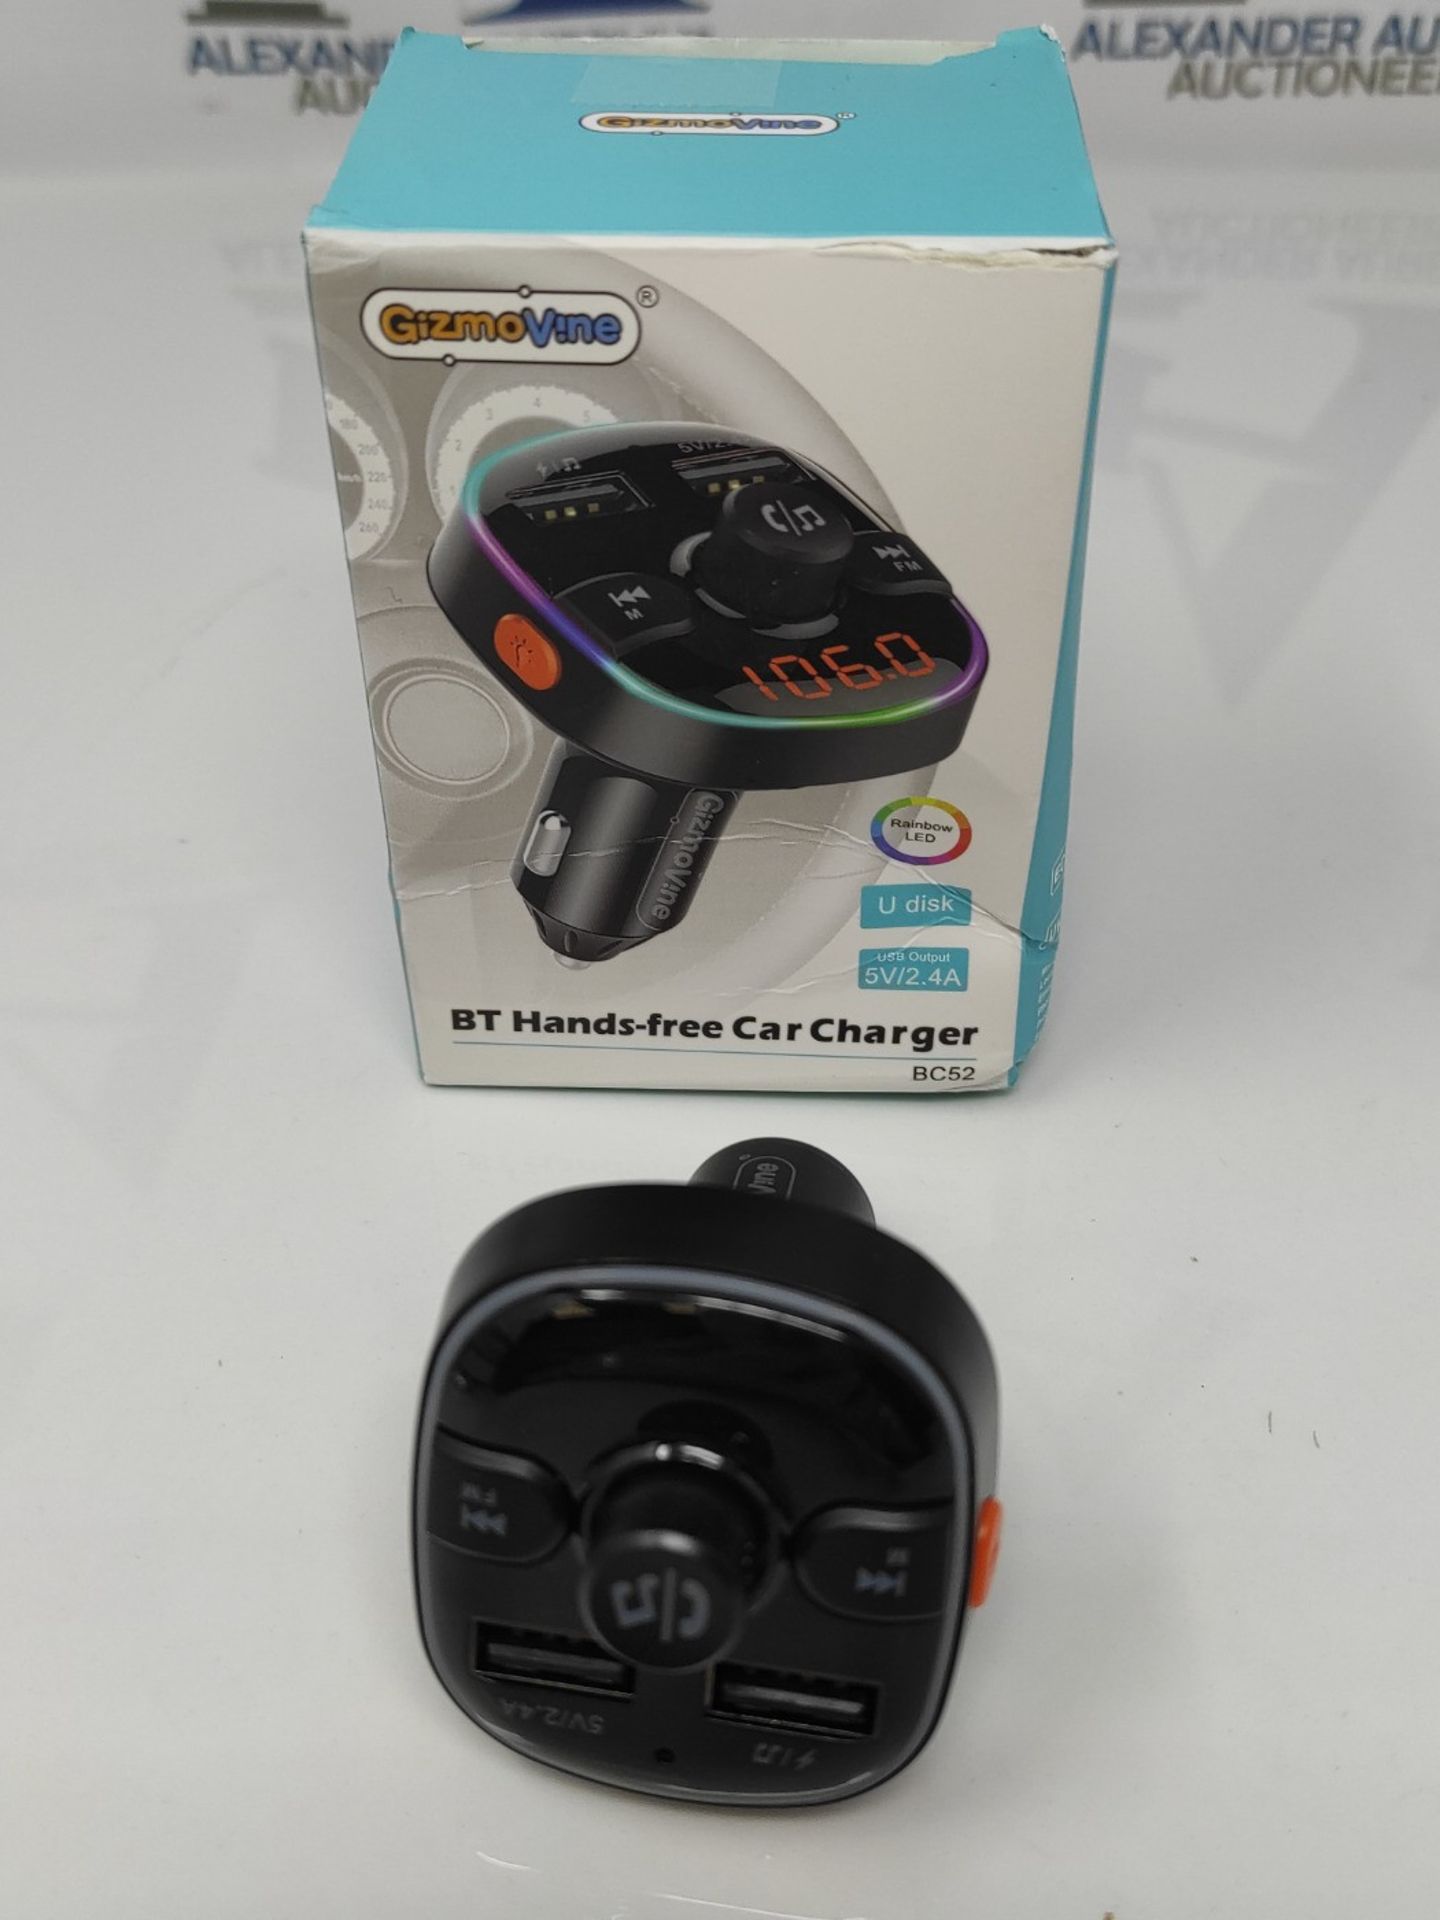 Bluetooth FM Transmitter for Car, Cigarette Lighter Adapter, 2 USB Ports 5V/2.4A, Jack - Image 3 of 3